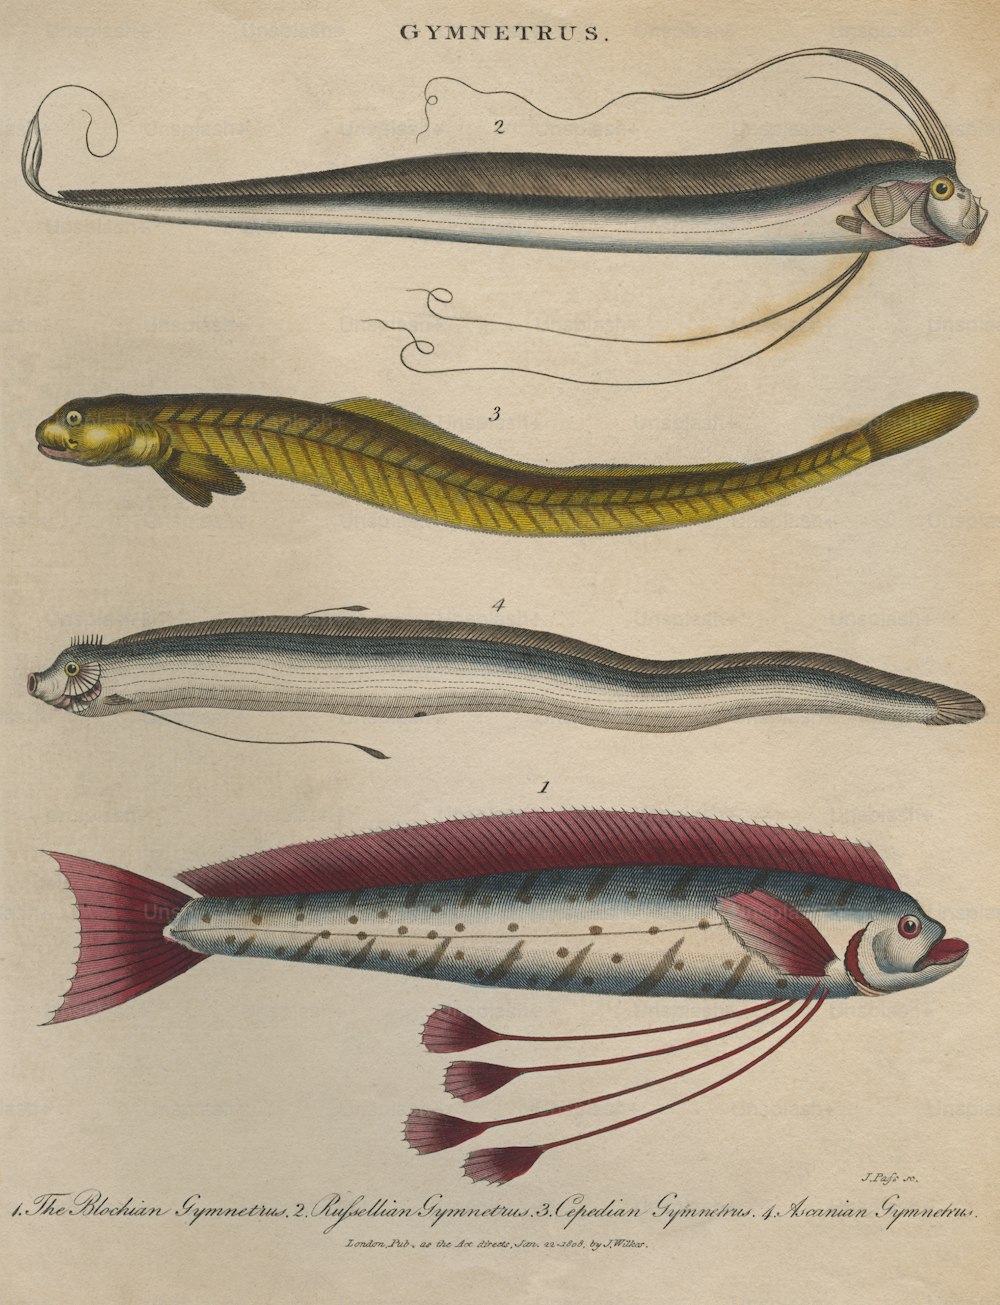 Cuatro peces cinta o Gymnetrus, alrededor de 1808. De arriba a abajo, un gymnetrus russelliano, un gymnetrus cepediano, un gymnetrus ascaniano y un gymnetrus blochiano.  Grabado de J. Pass. (Foto de Hulton Archive/Getty Images)